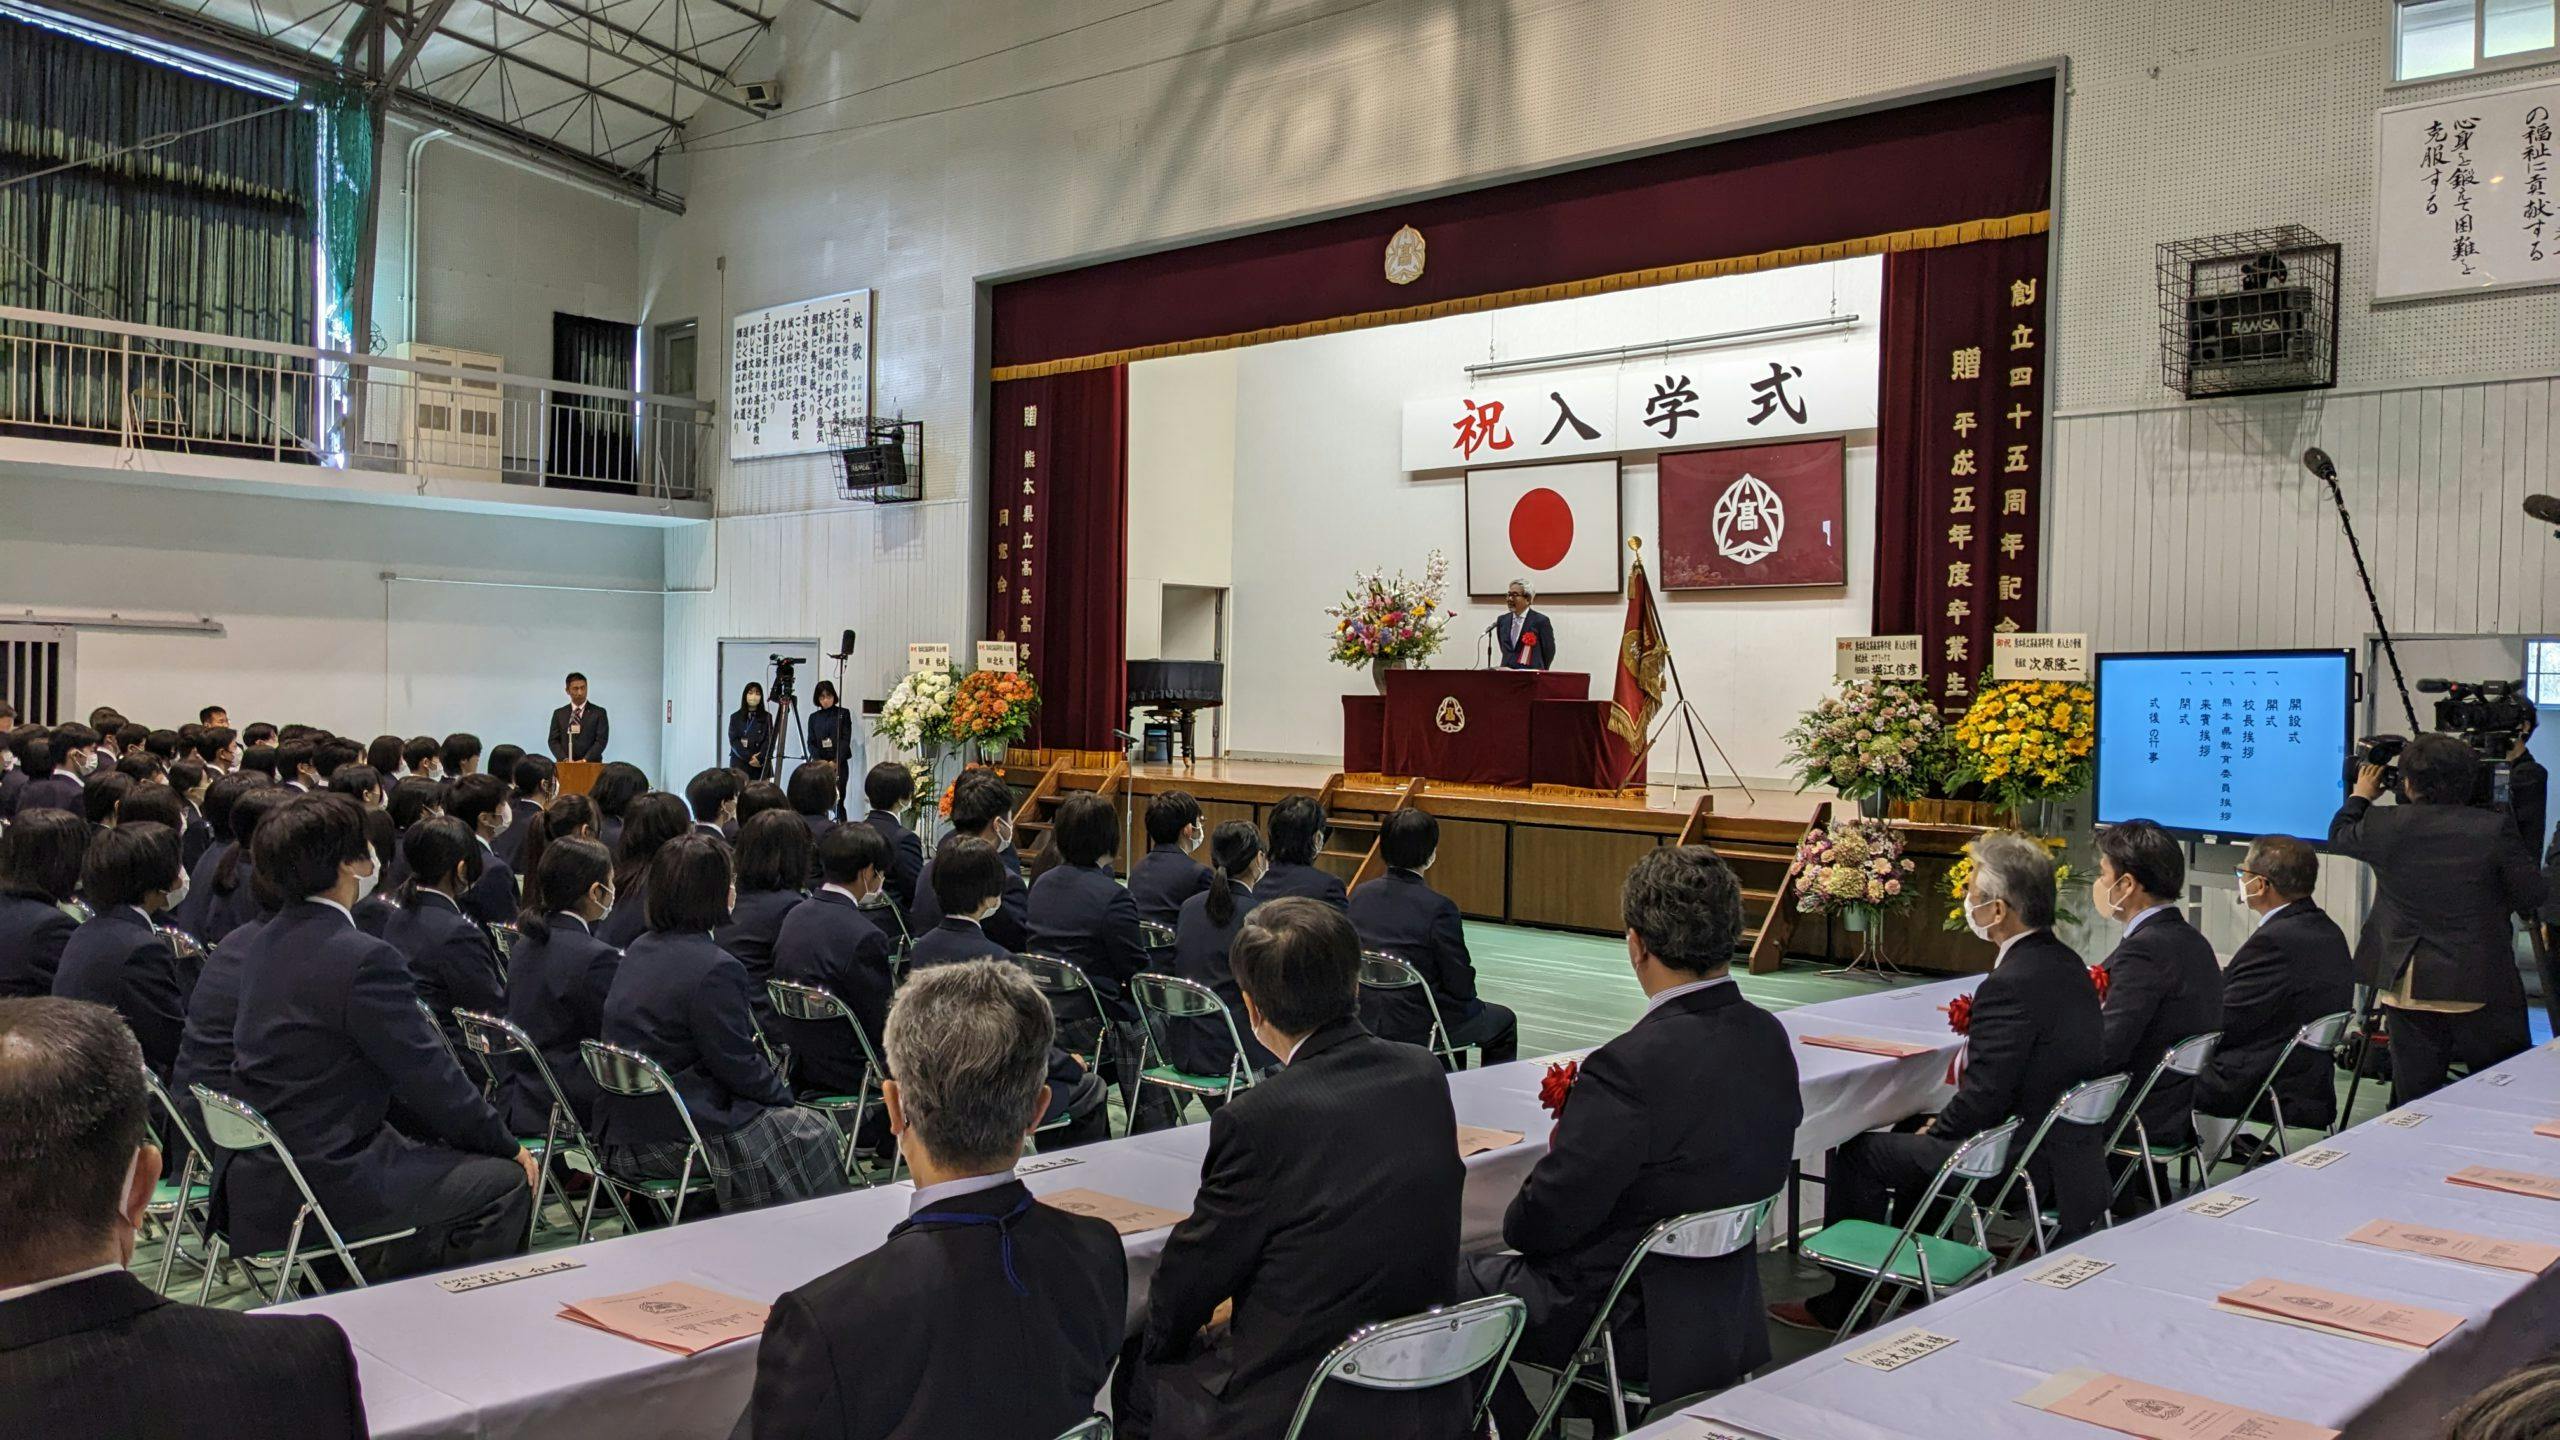 कुमामोटो प्रीफेक्चुरल ताकामोरी हाई स्कूल में मंगा विभाग प्रवेश समारोह